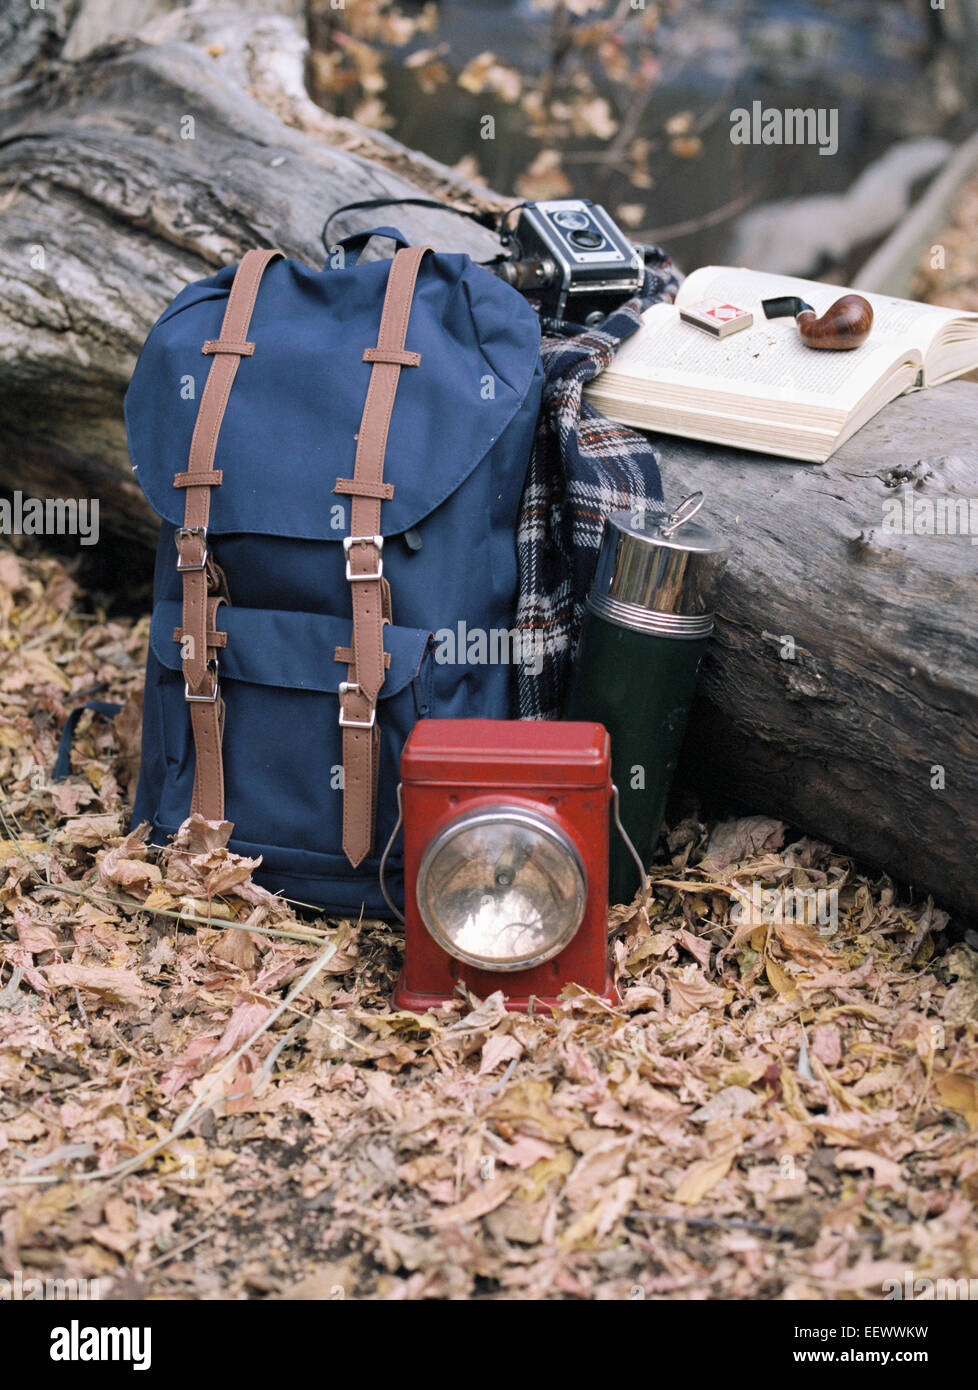 Wandern Ausrüstung, Rucksack, Taschenlampe, Kolben und Kamera durch einen Baumstamm. Ein Rohr auf ein offenes Buch liegen. Stockfoto